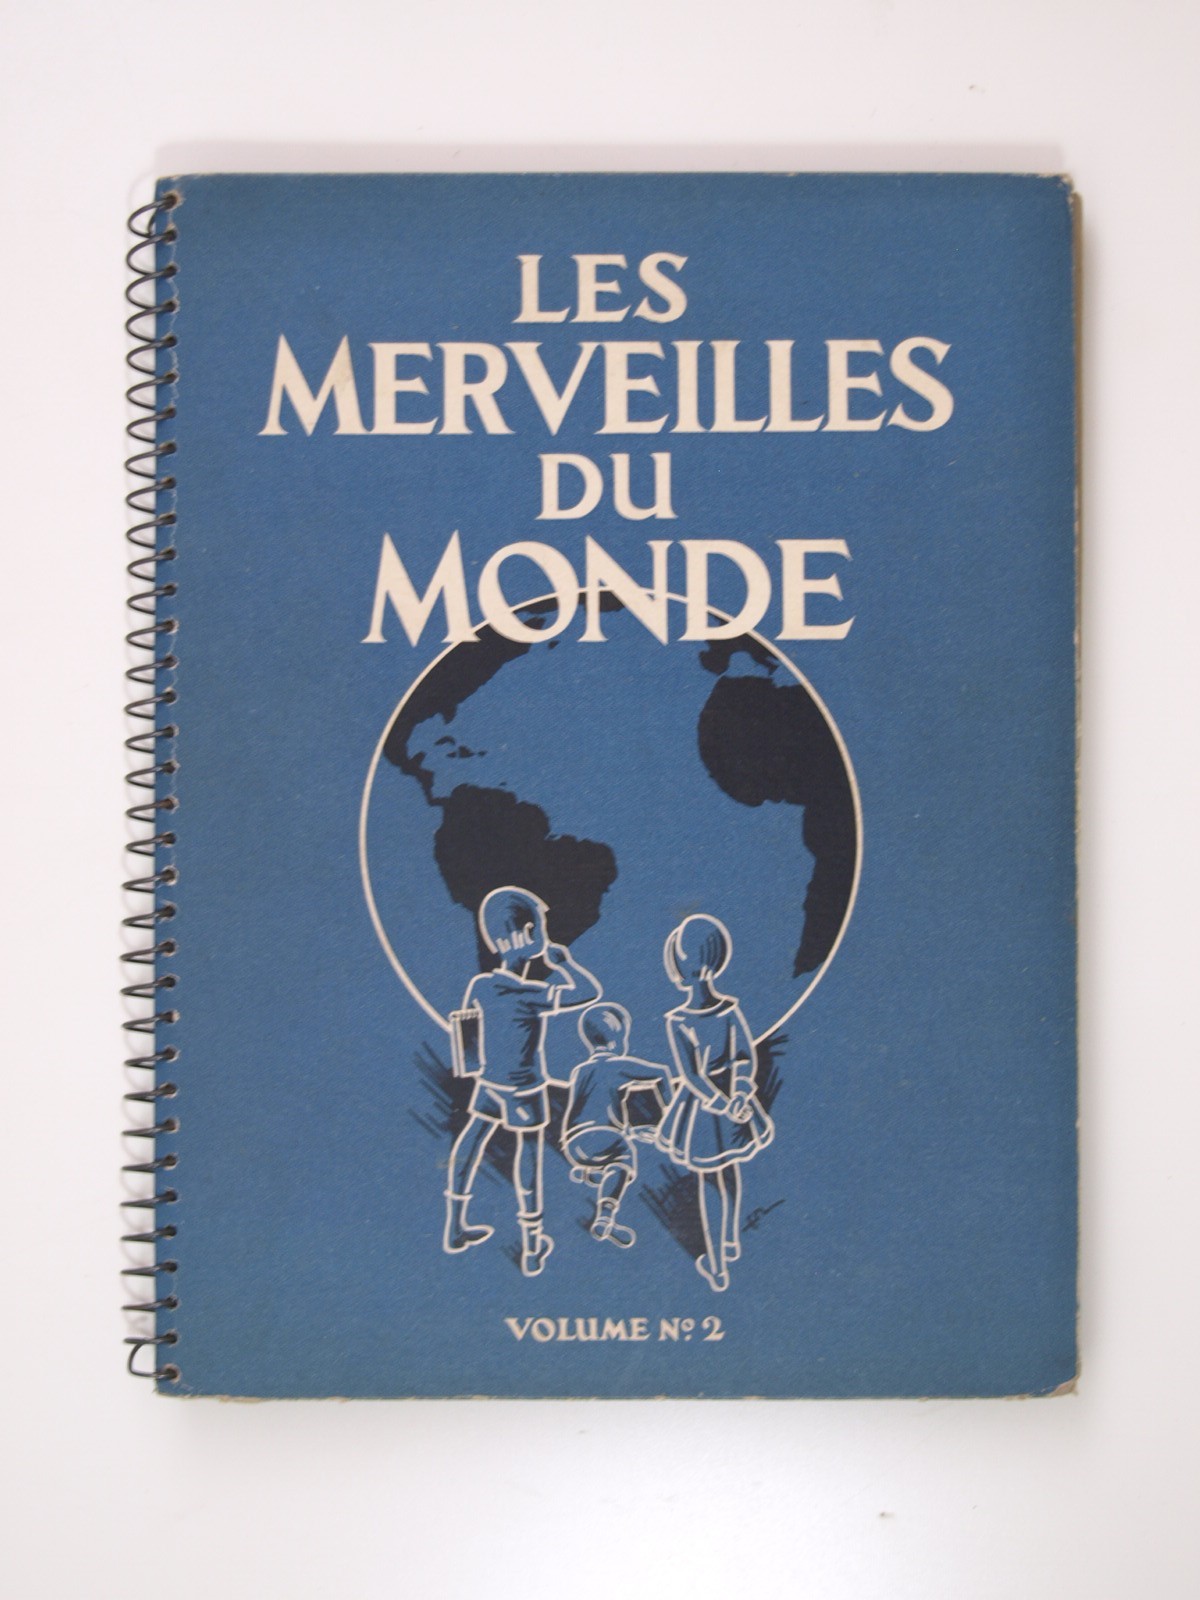 : Les merveilles du monde. Vol. n°2. 1932 Complet